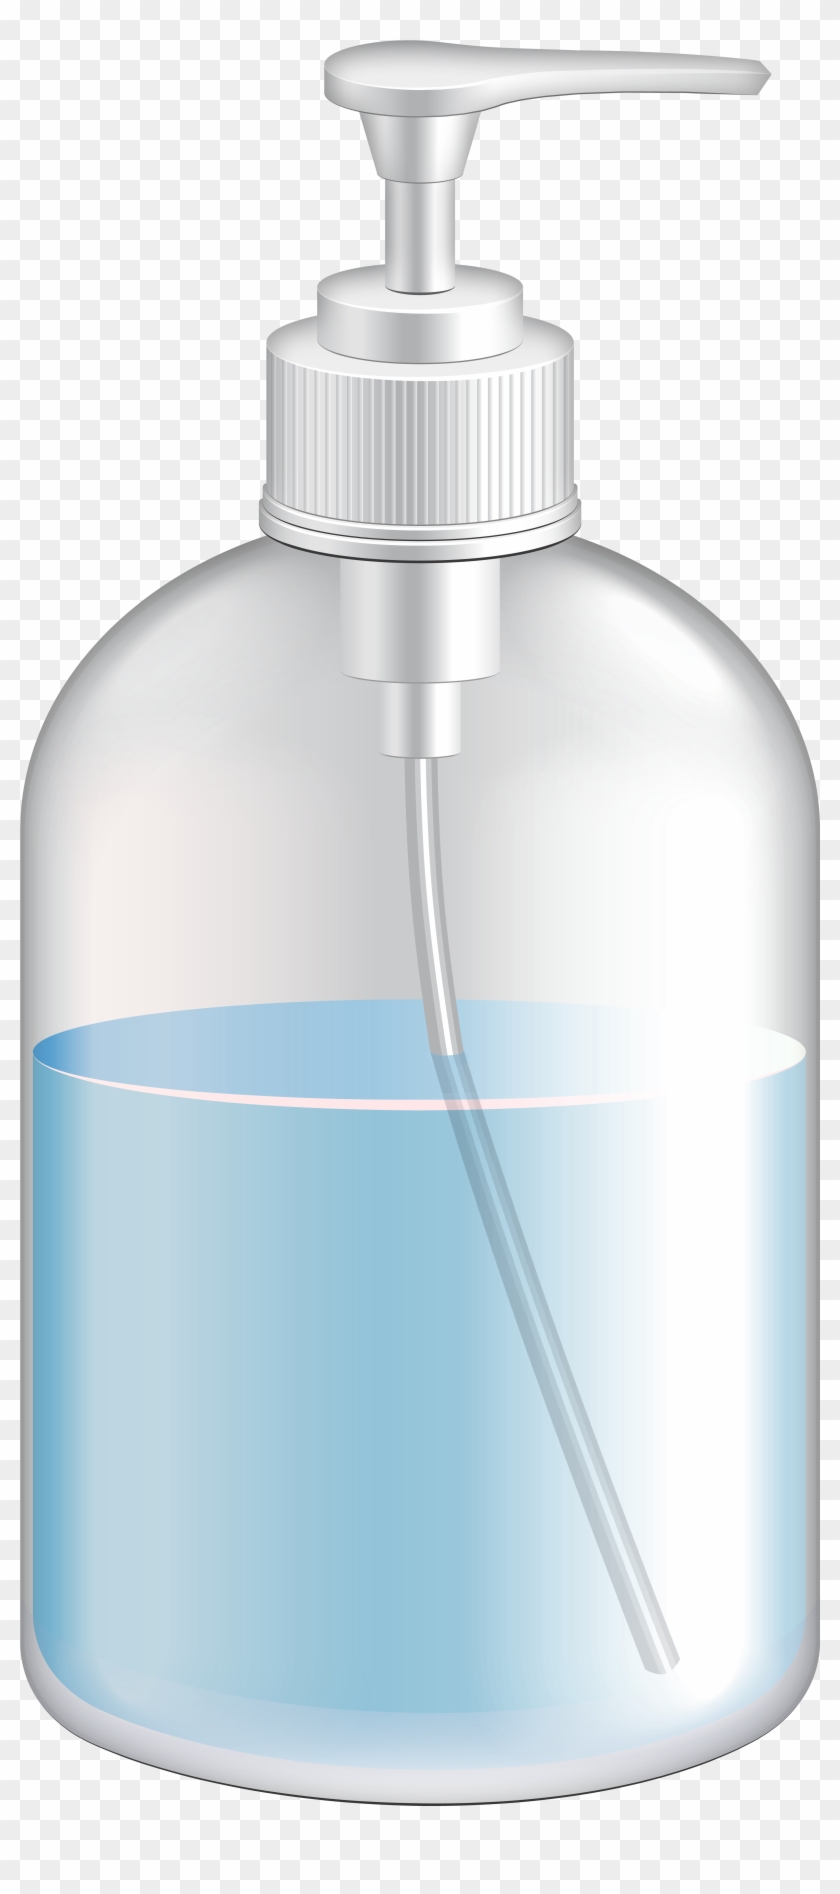 Hand Soap Bottle Transparent Image - Plastic Bottle Clipart #3181149